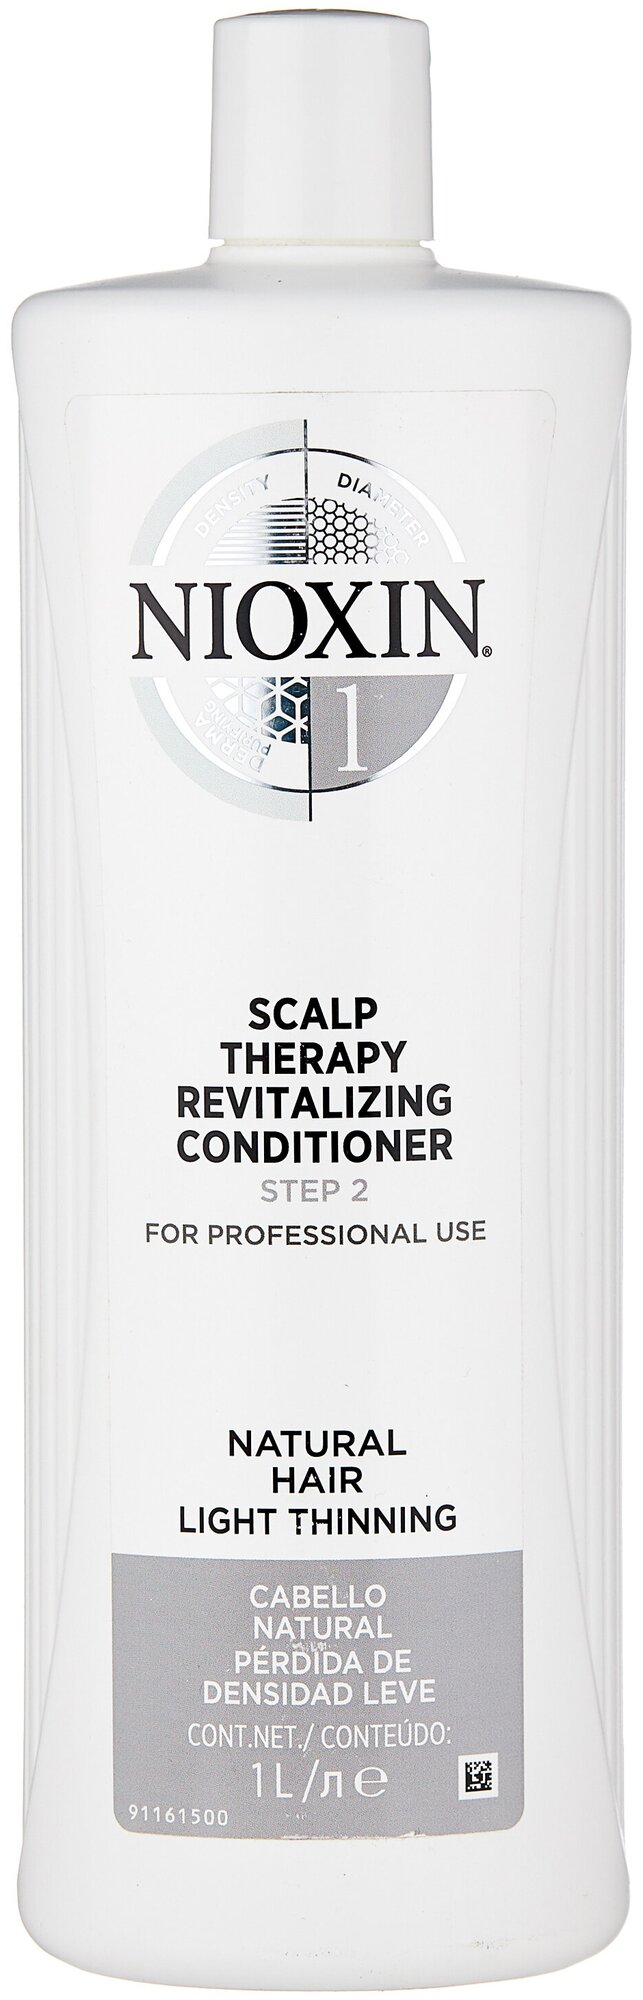 Nioxin кондиционер Scalp Therapy Conditioner System 1 для натуральных волос с тенденцией к источению, 1000 мл